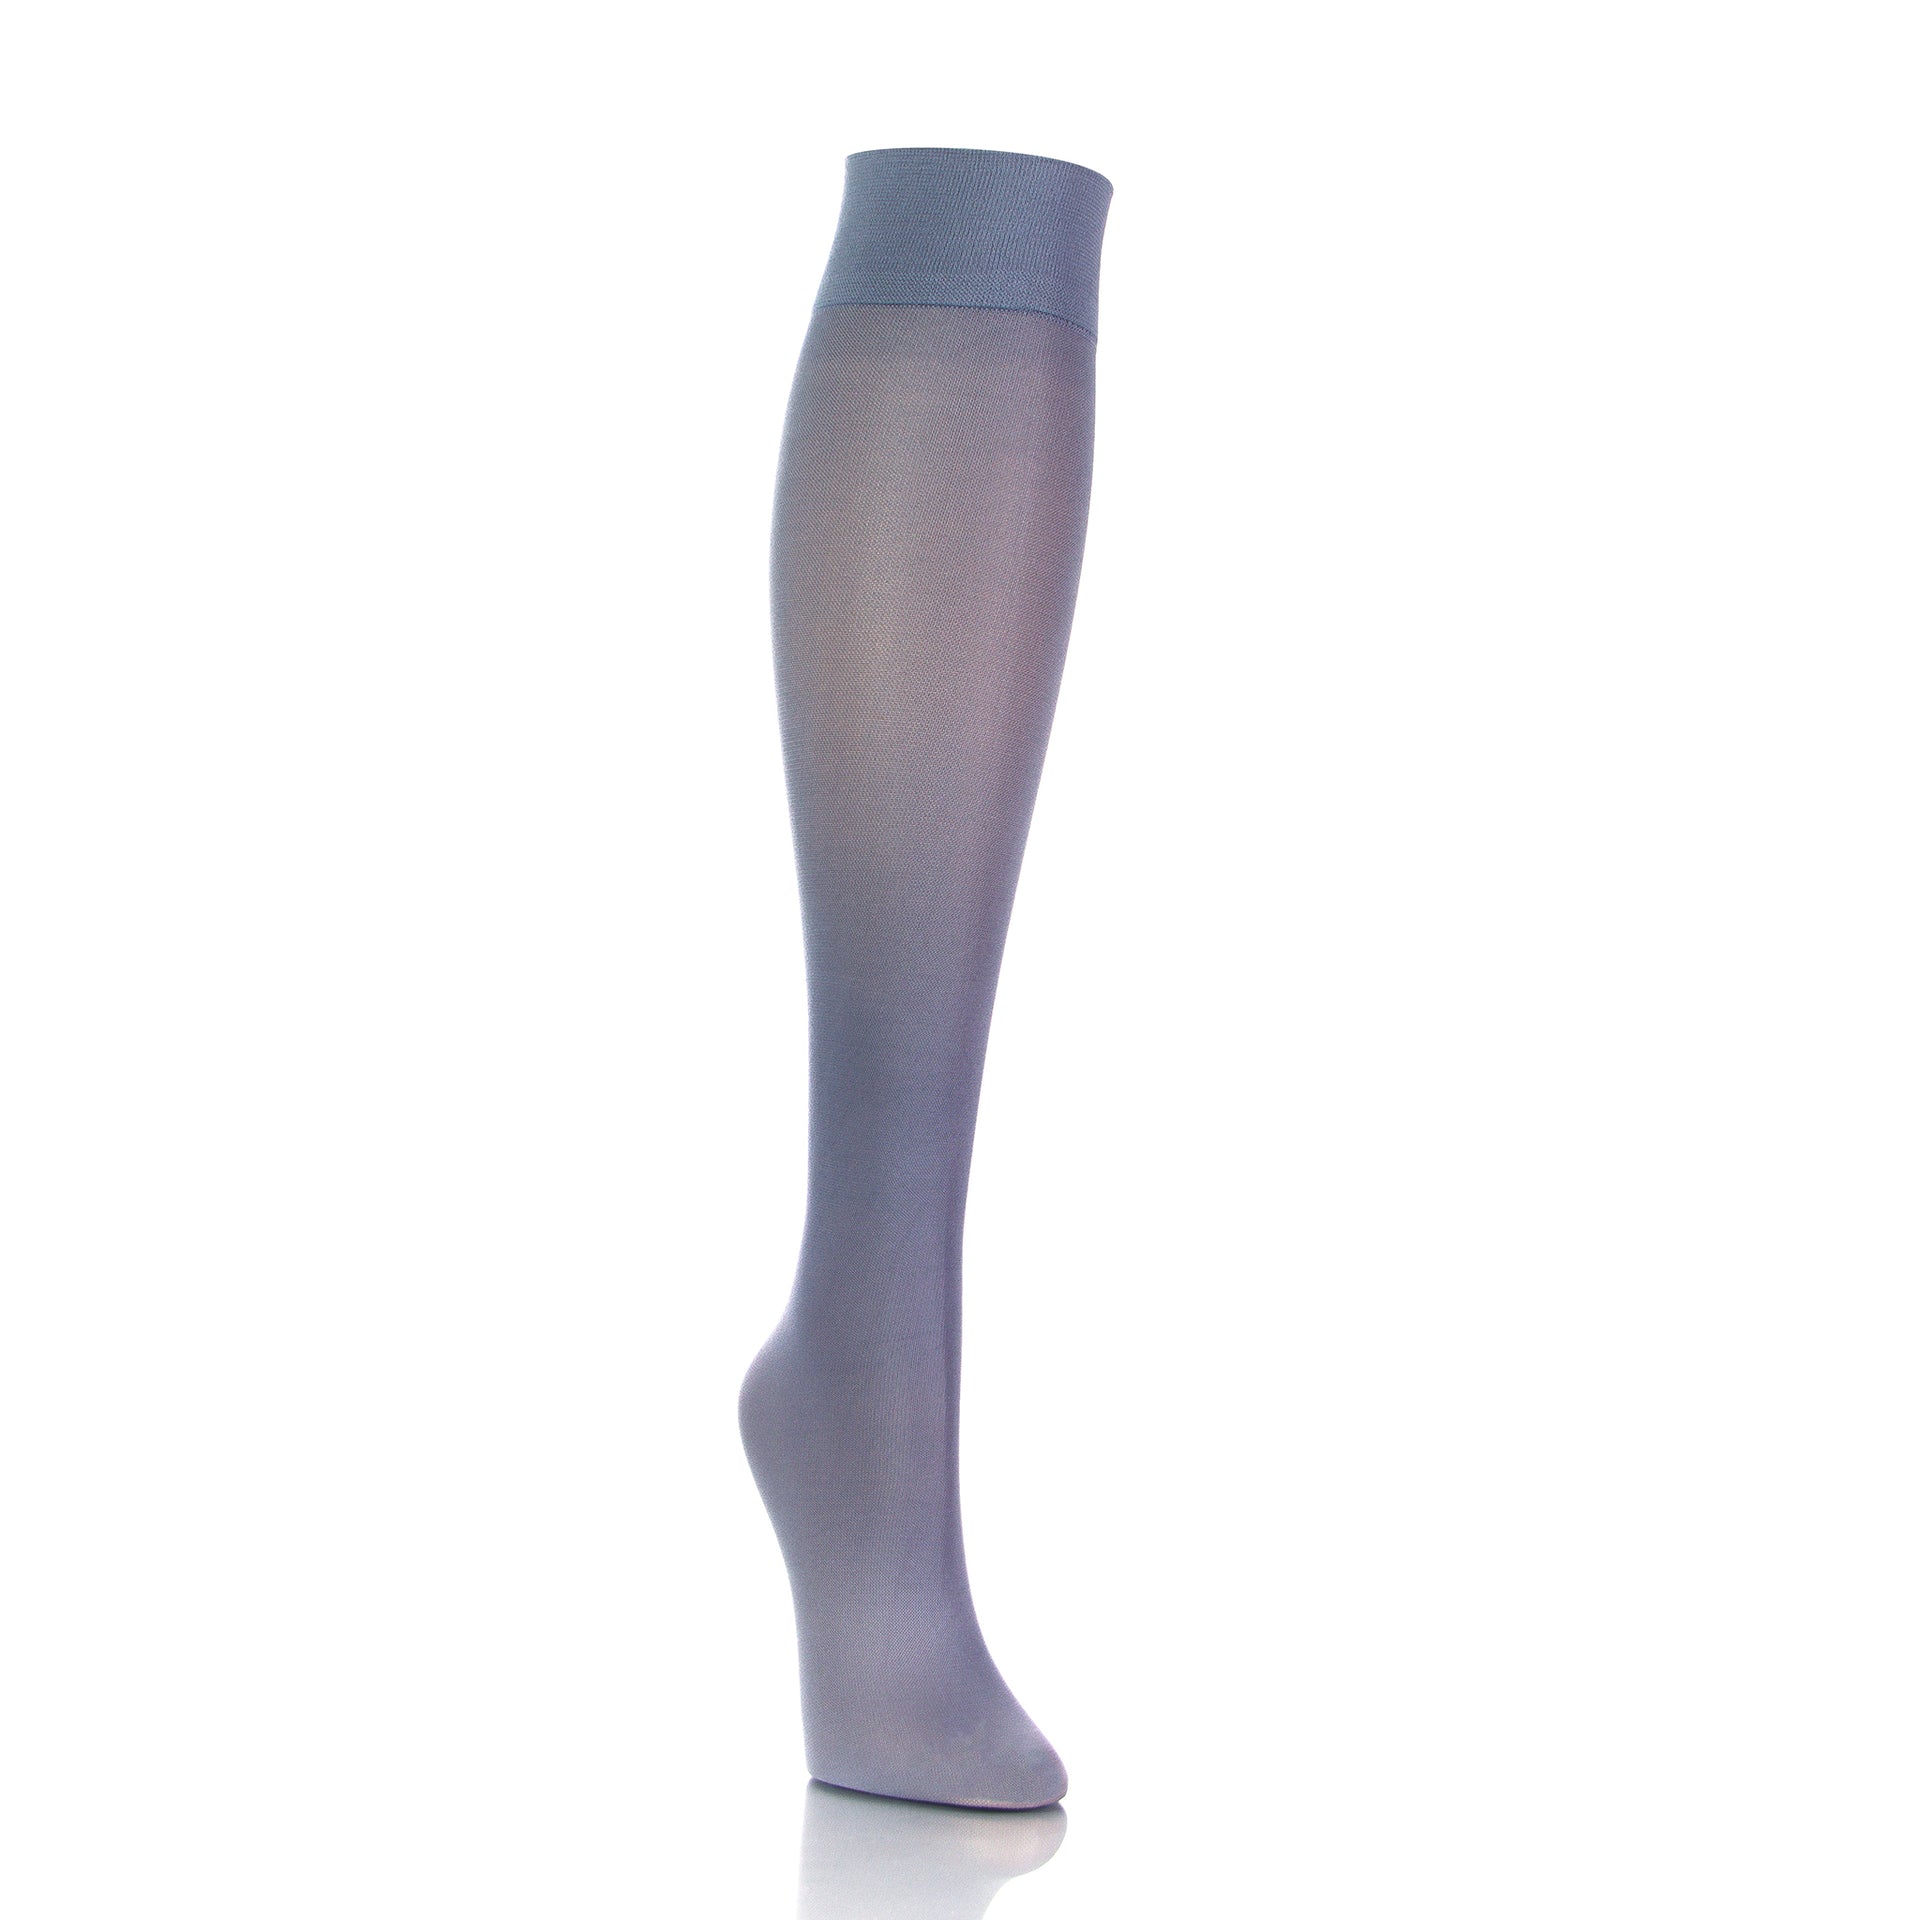 Bas de compression gris clair 20-30 mmHg pour femme, vue en diagonale, confortable et élégant - Softmedi